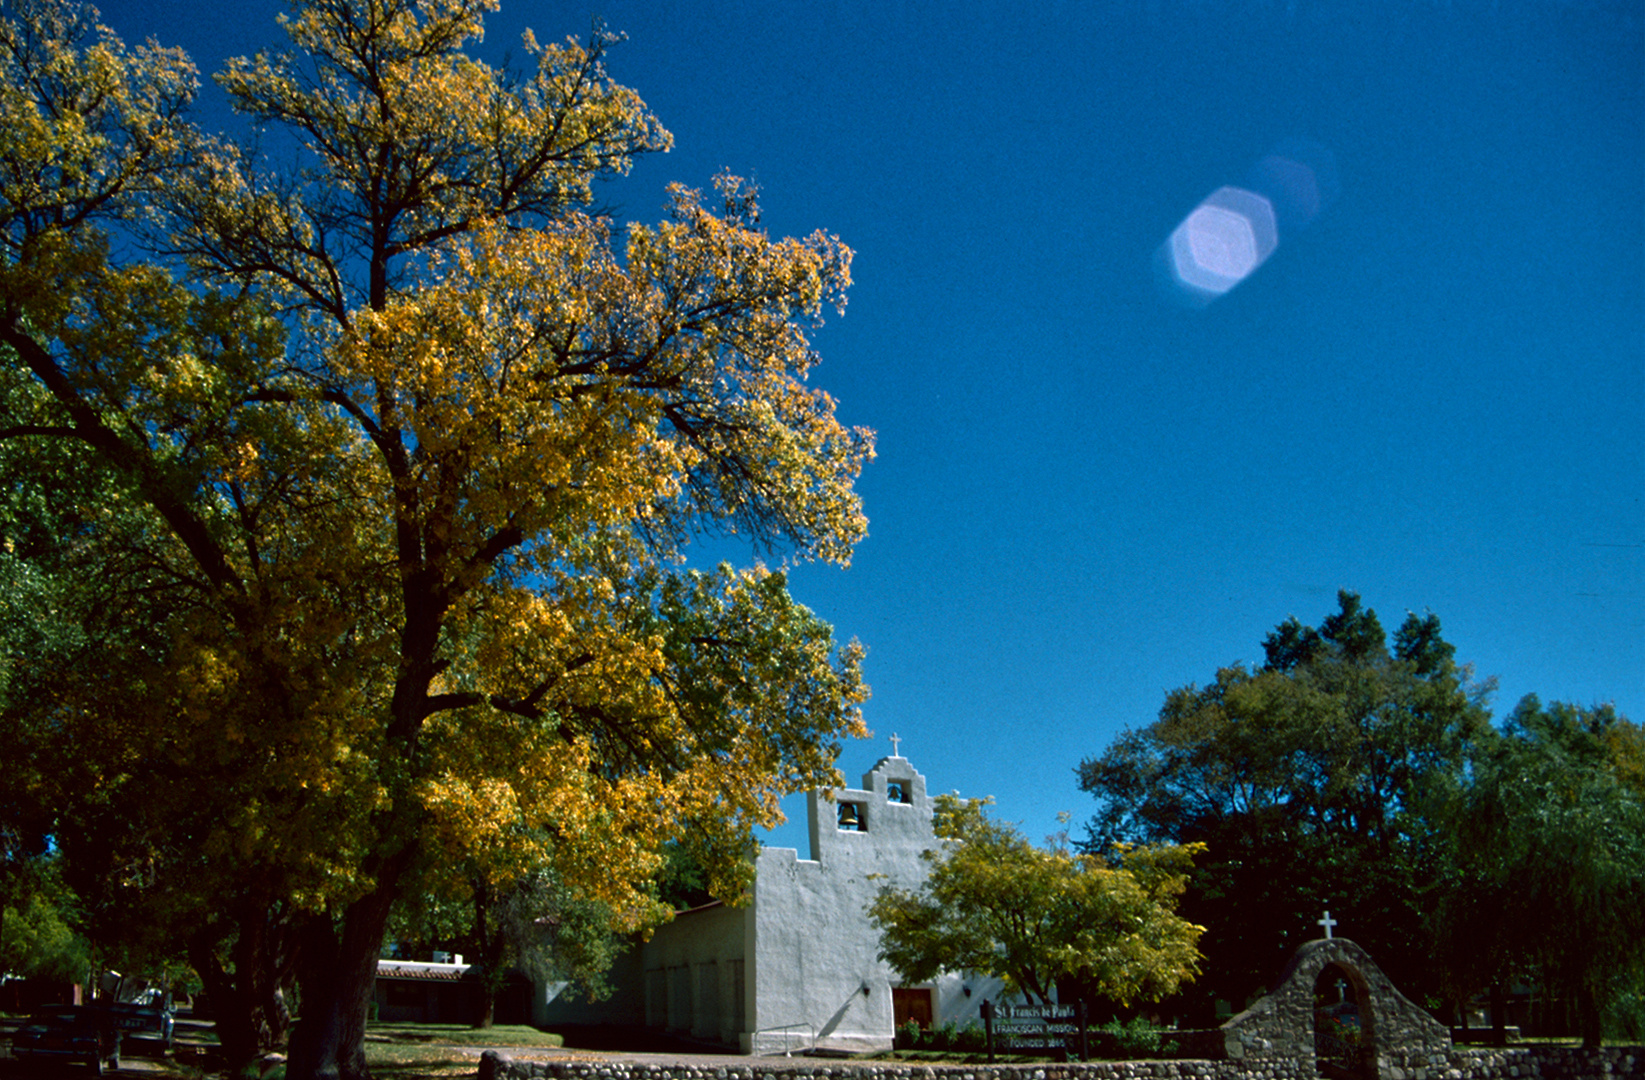 Saint Francis de Paula Church, Tularosa, NM - 1989